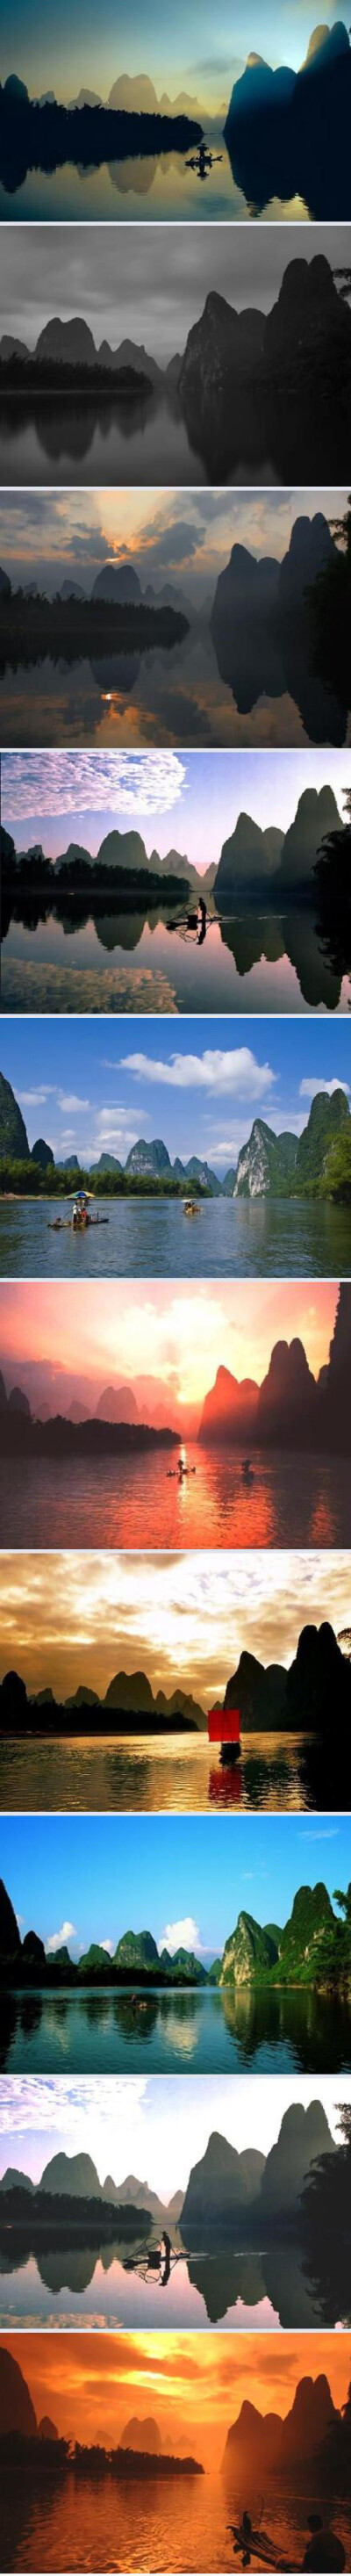 【旅行视觉】桂林之美甲天下。| 不同时间、不同天候，同一地点的摄影。